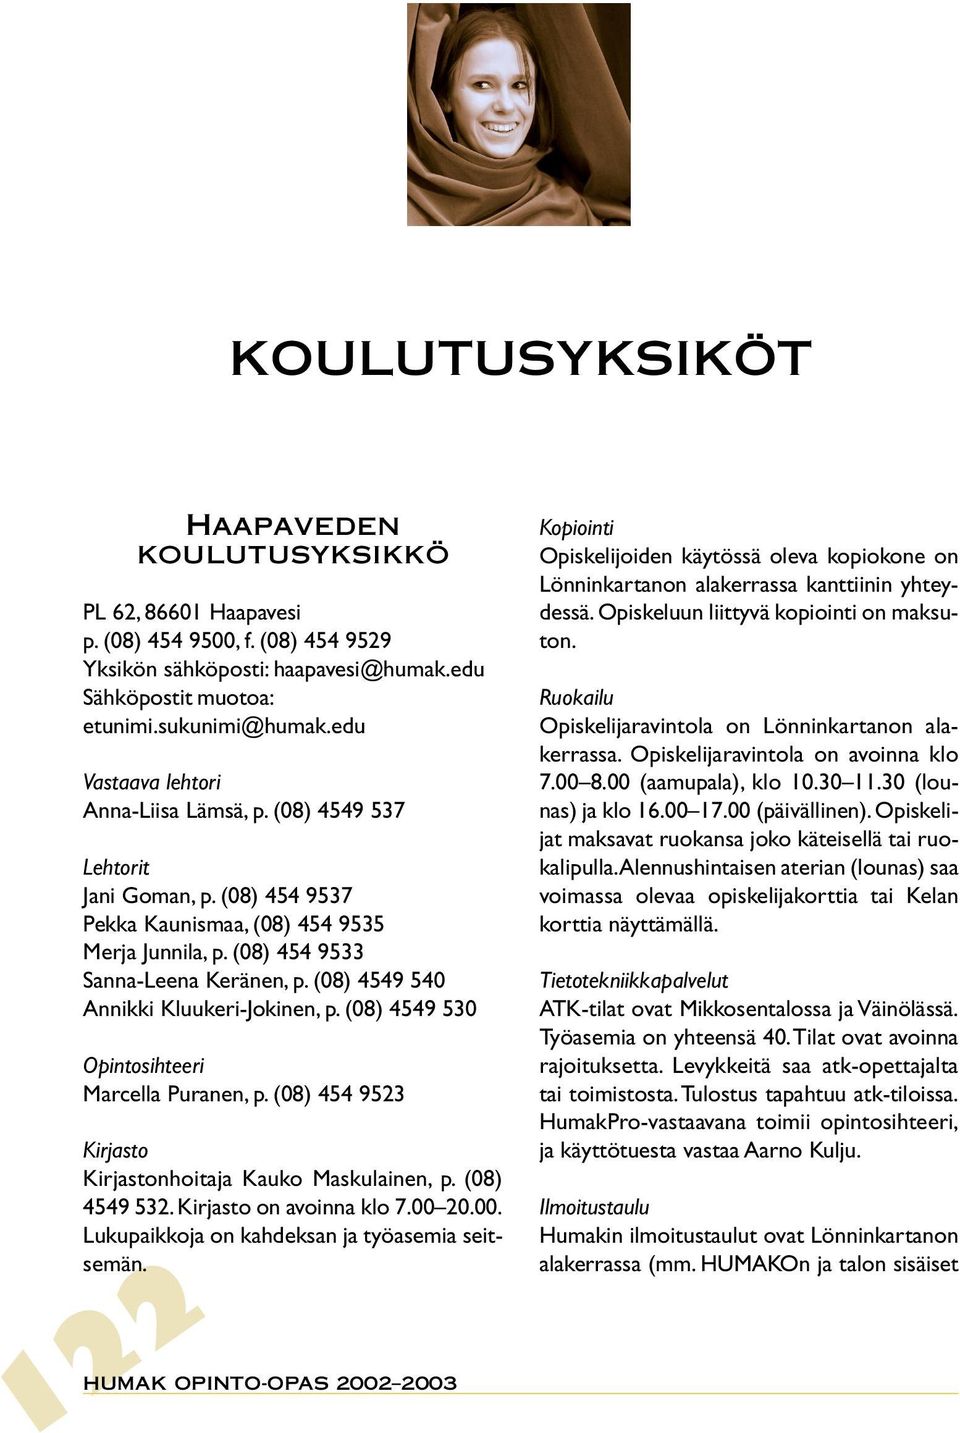 (08) 4549 540 Annikki Kluukeri-Jokinen, p. (08) 4549 530 Opintosihteeri Marcella Puranen, p. (08) 454 9523 Kirjasto Kirjastonhoitaja Kauko Maskulainen, p. (08) 4549 532. Kirjasto on avoinna klo 7.